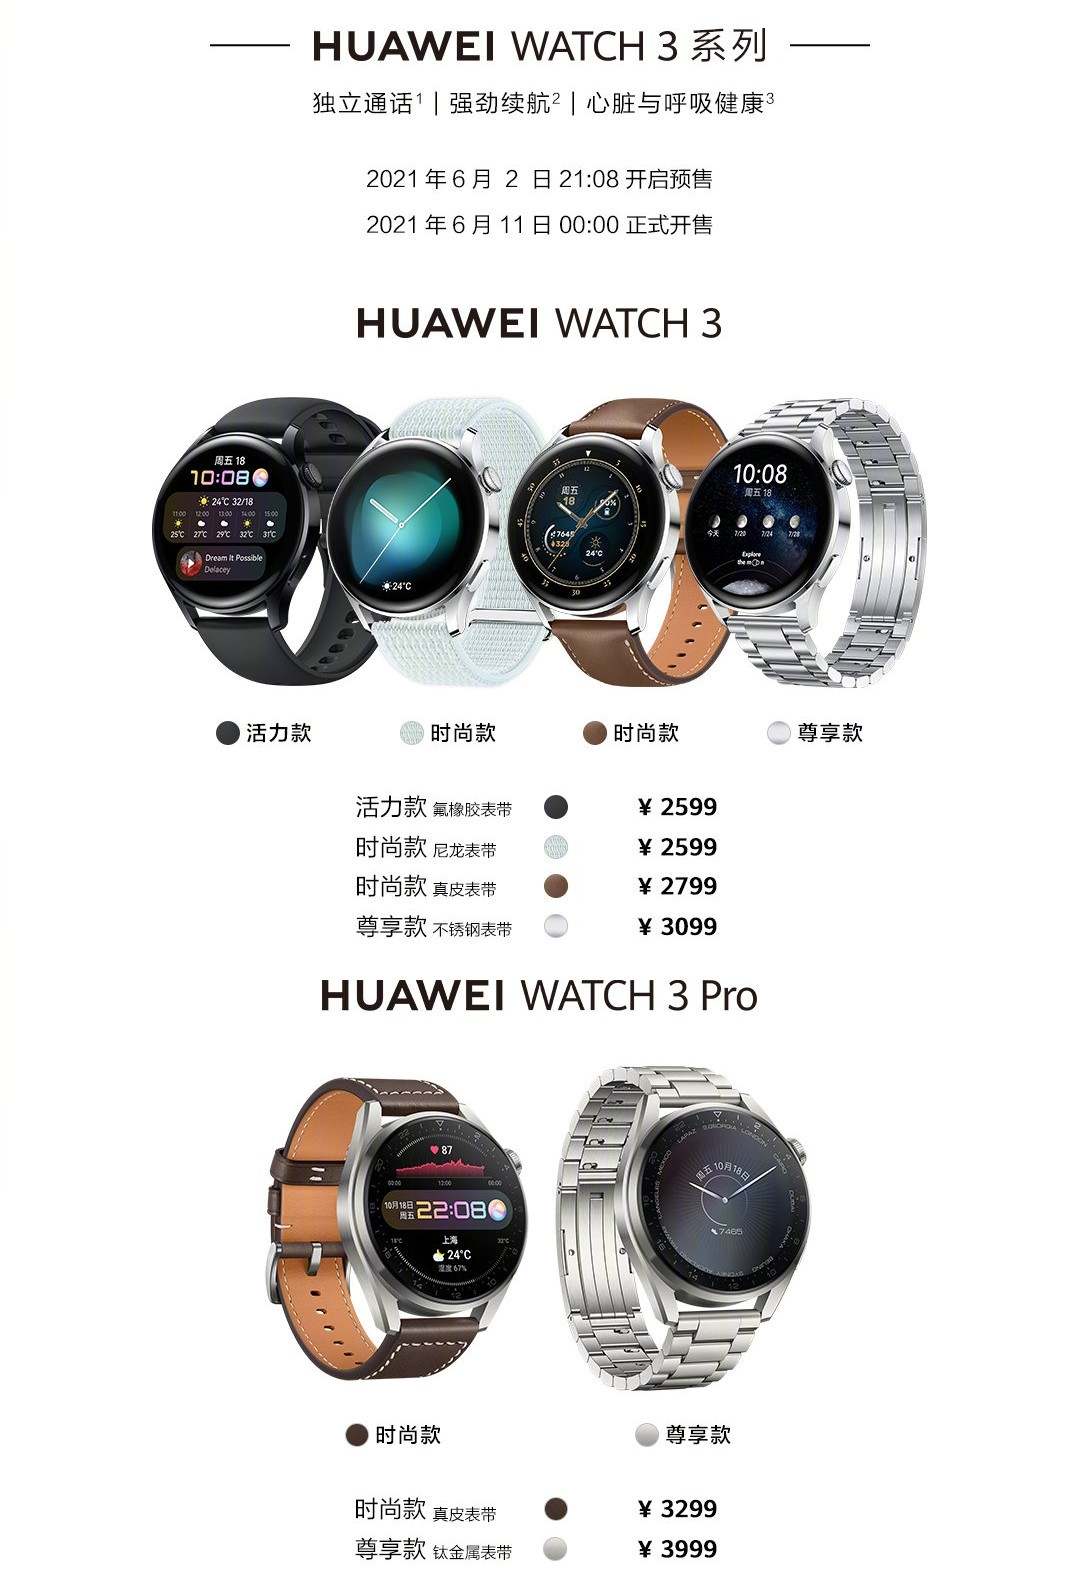 Huawei Watch 3 dévoilée avec HarmonyOS, eSIM, batterie de 3 jours, 3 Pro suit avec corps en titane 